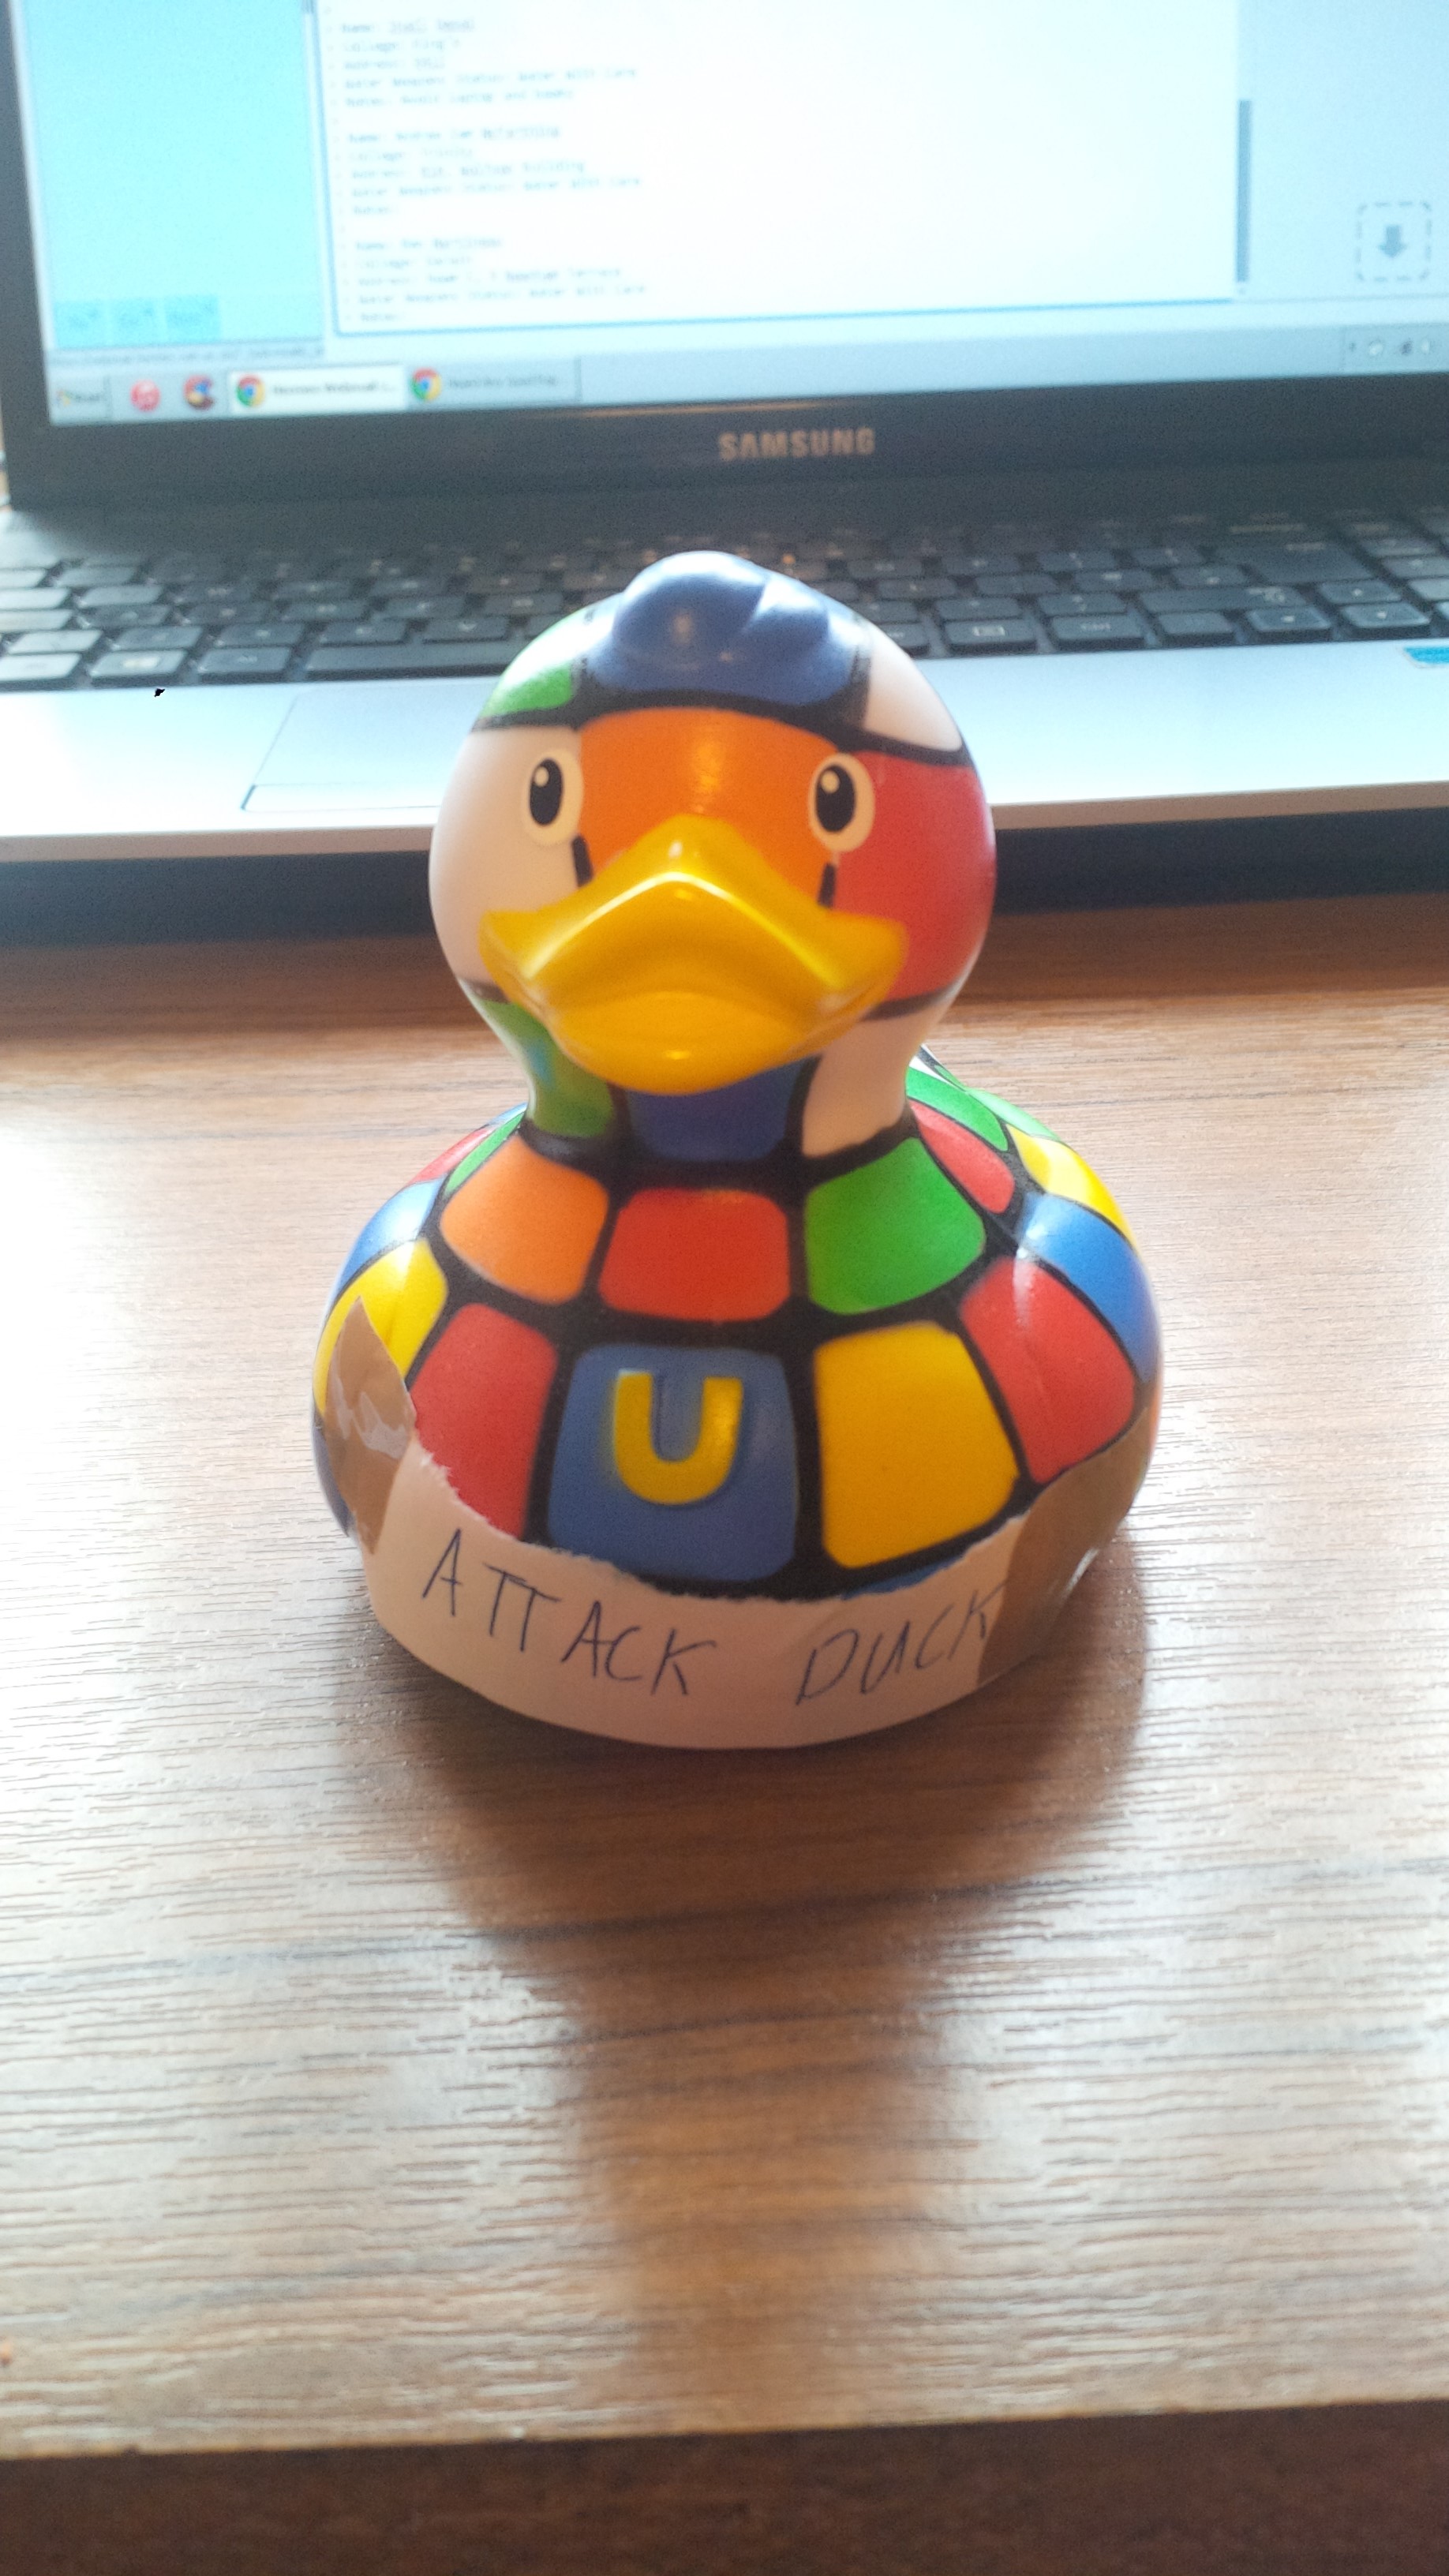 Attack Duck